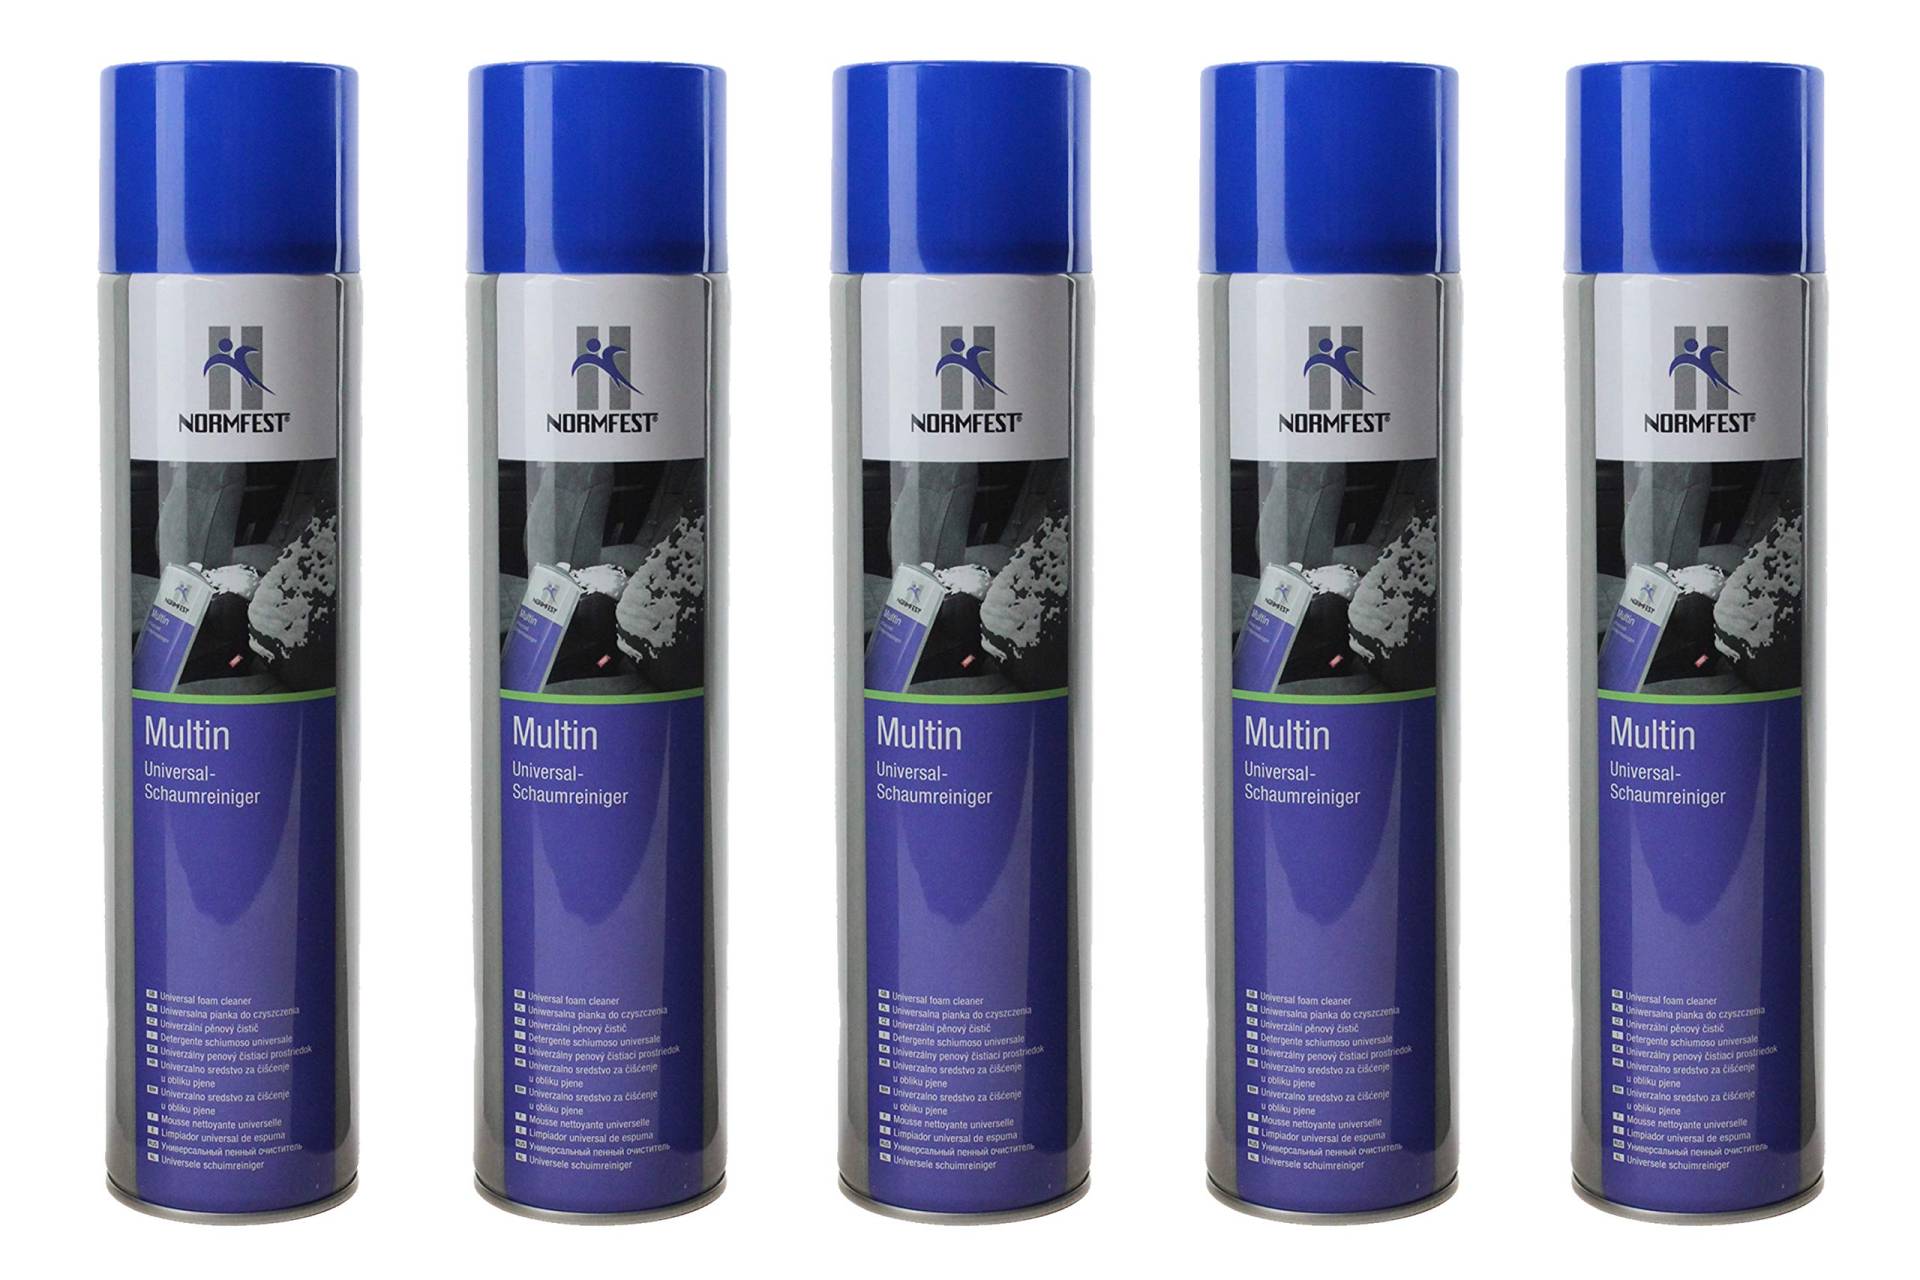 5x Normfest Multin Universal - Schaumreiniger Spezial Reiniger Teppich Glas Kunstoffoberflächen Sprühflasche von BISOMO